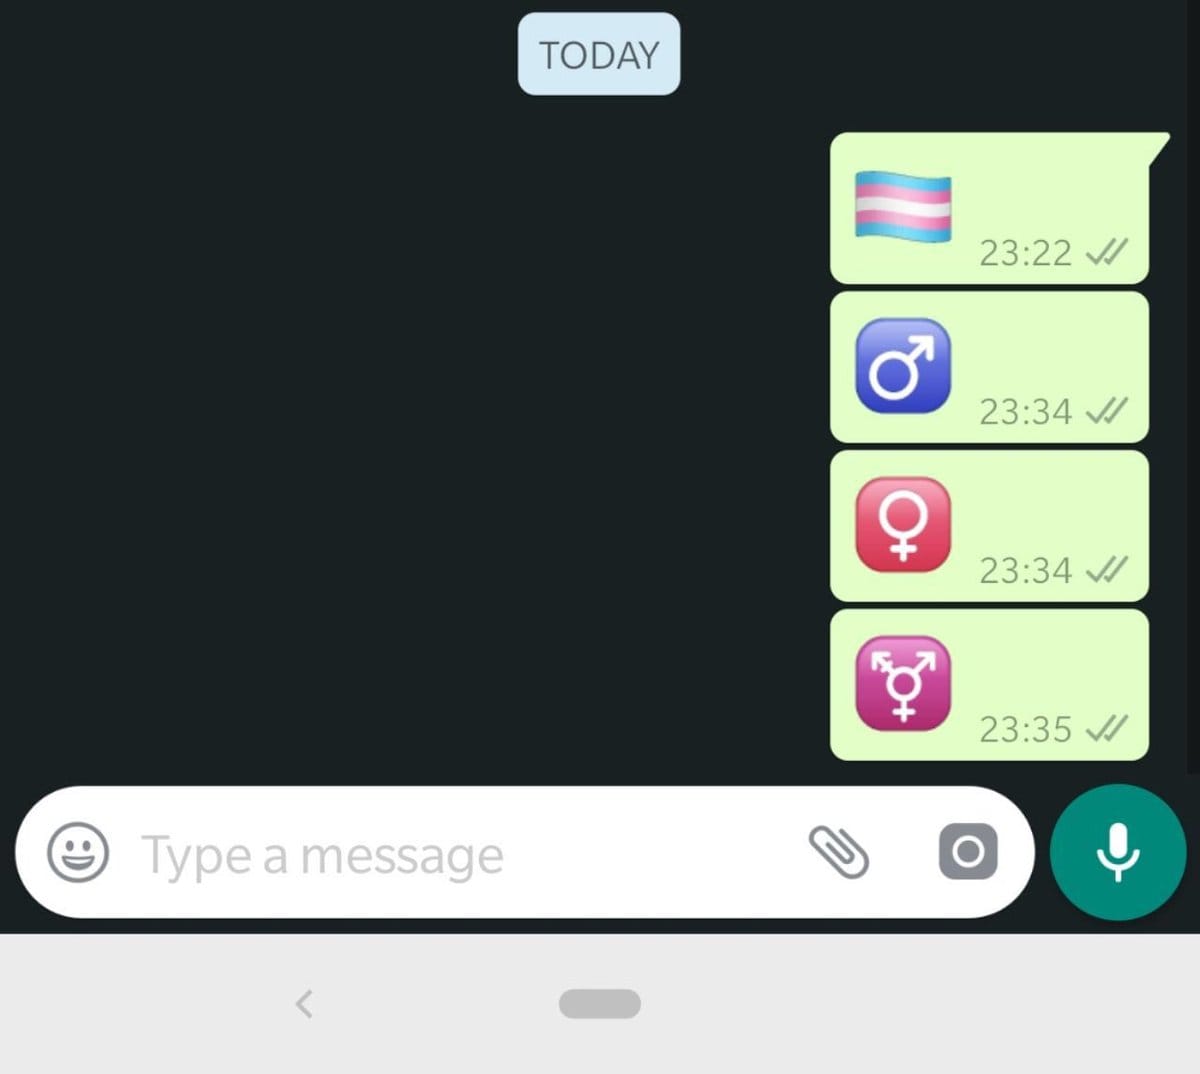 Laut "WABetaInfos" sollen auch neue Emojis für WhatsApp kommen: Die Symbole für Männer (♂) Frauen (♀) und Transgender-Personen (⚧) sowie die "Transgender Pride Flag". Die Emojis sind bisher in WhatsApp nicht wählbar. Sie werden jedoch angezeigt, wenn sie in den Messenger kopiert werden.